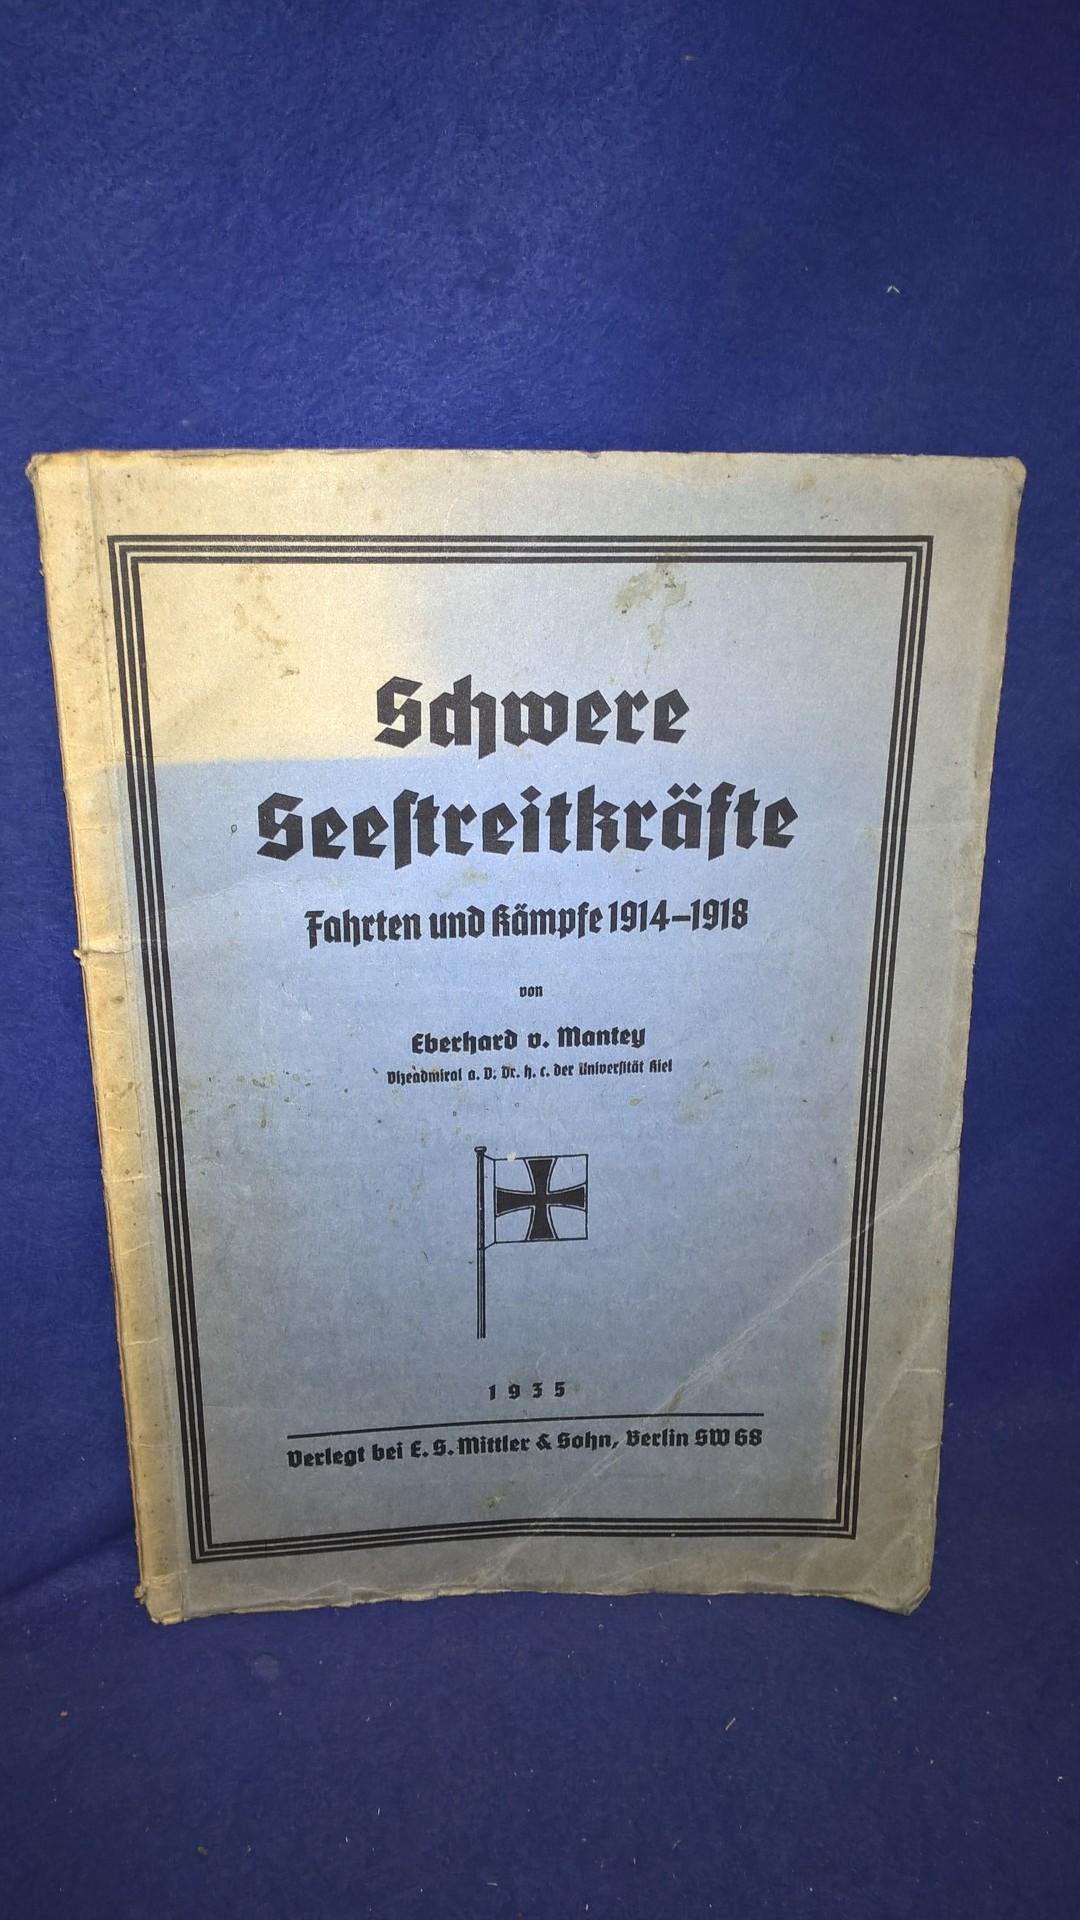 Schwere Seestreitkräfte. Fahrten und Kämpfe 1914 - 1918.